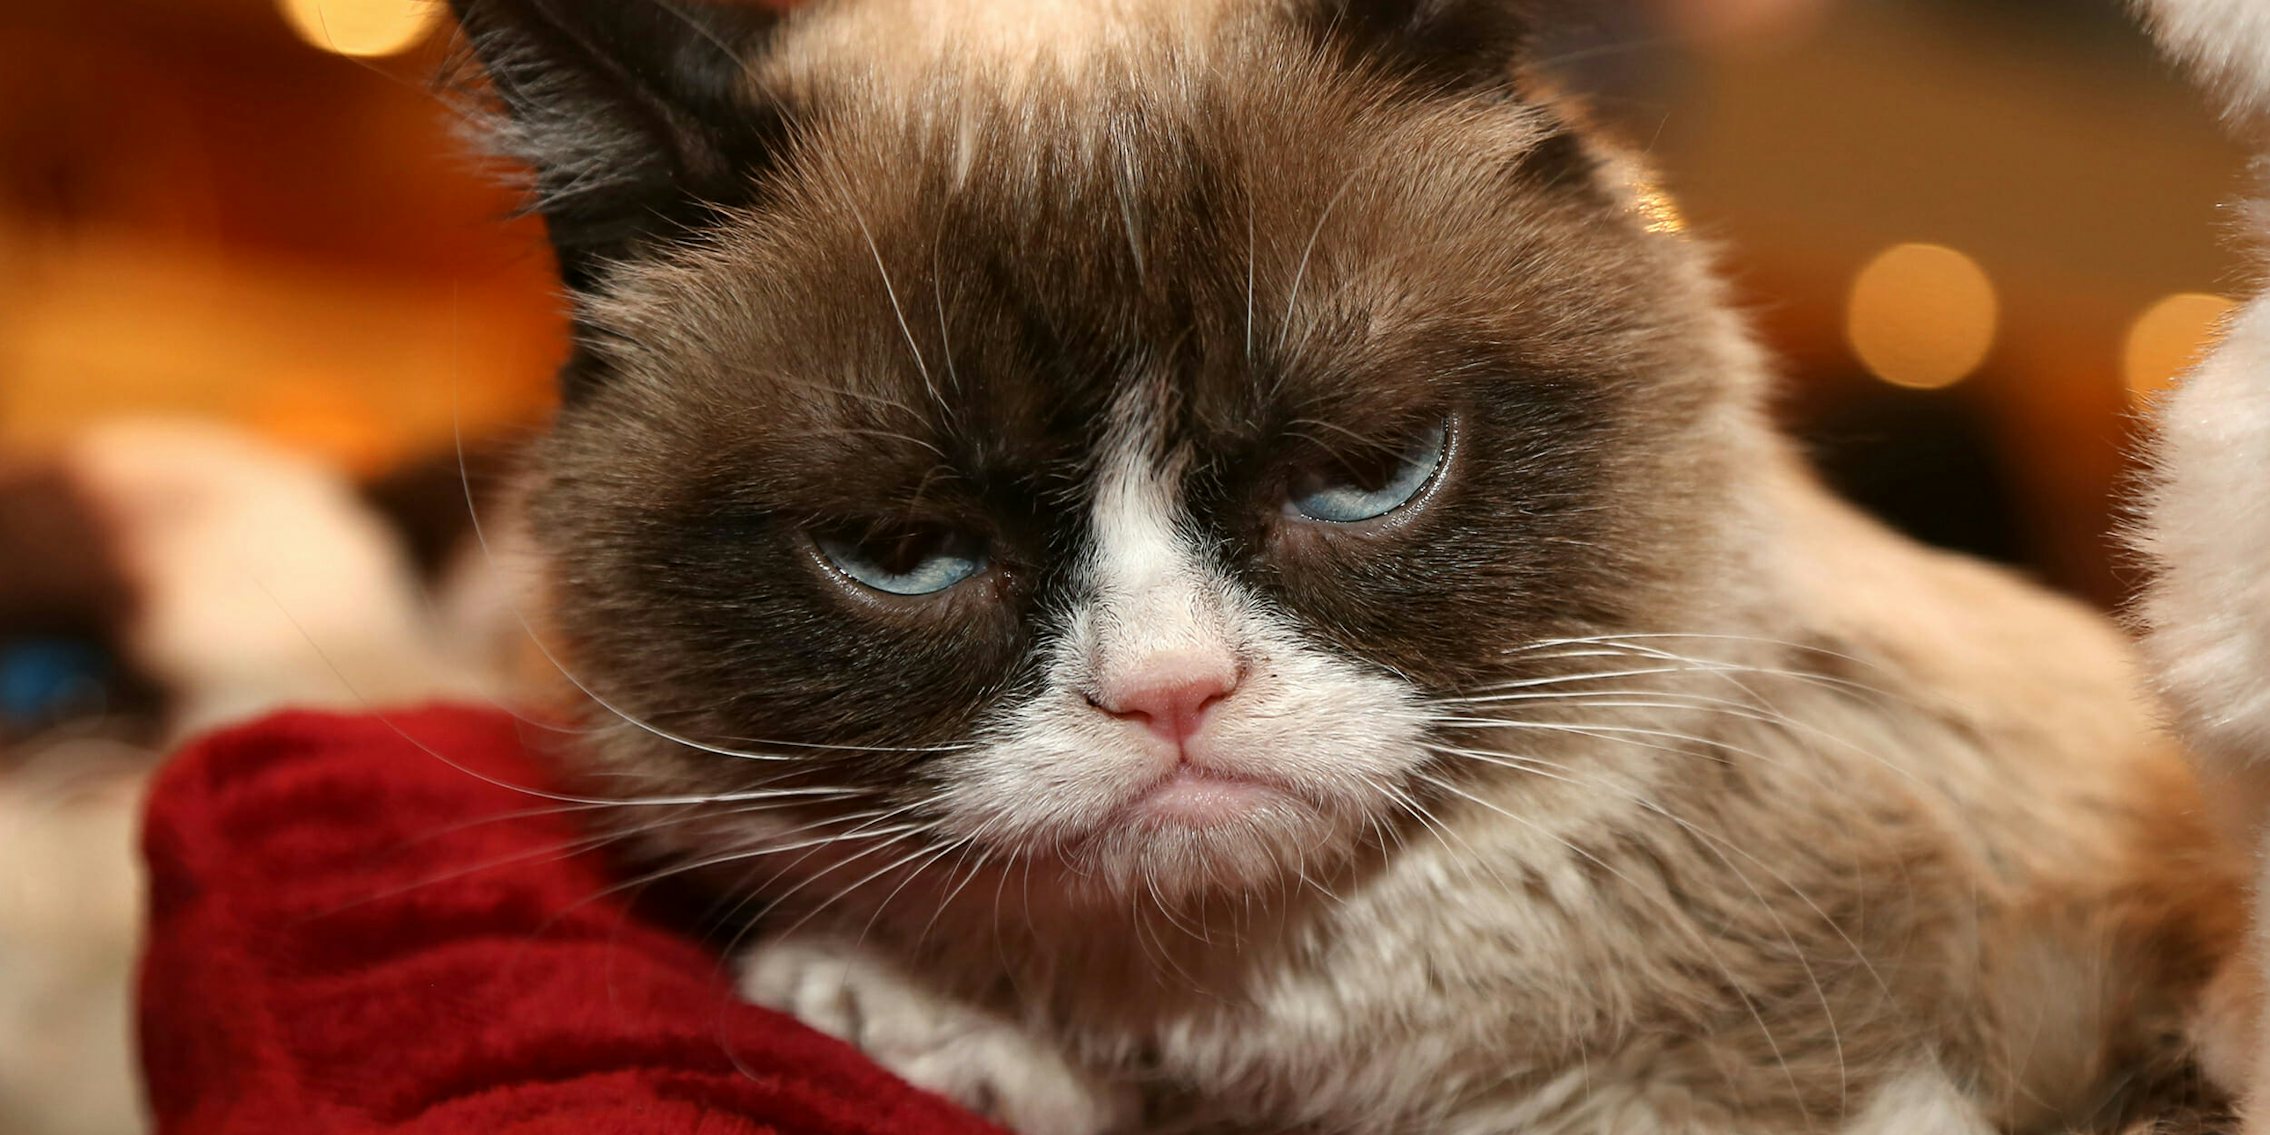 grumpy cat good night meme